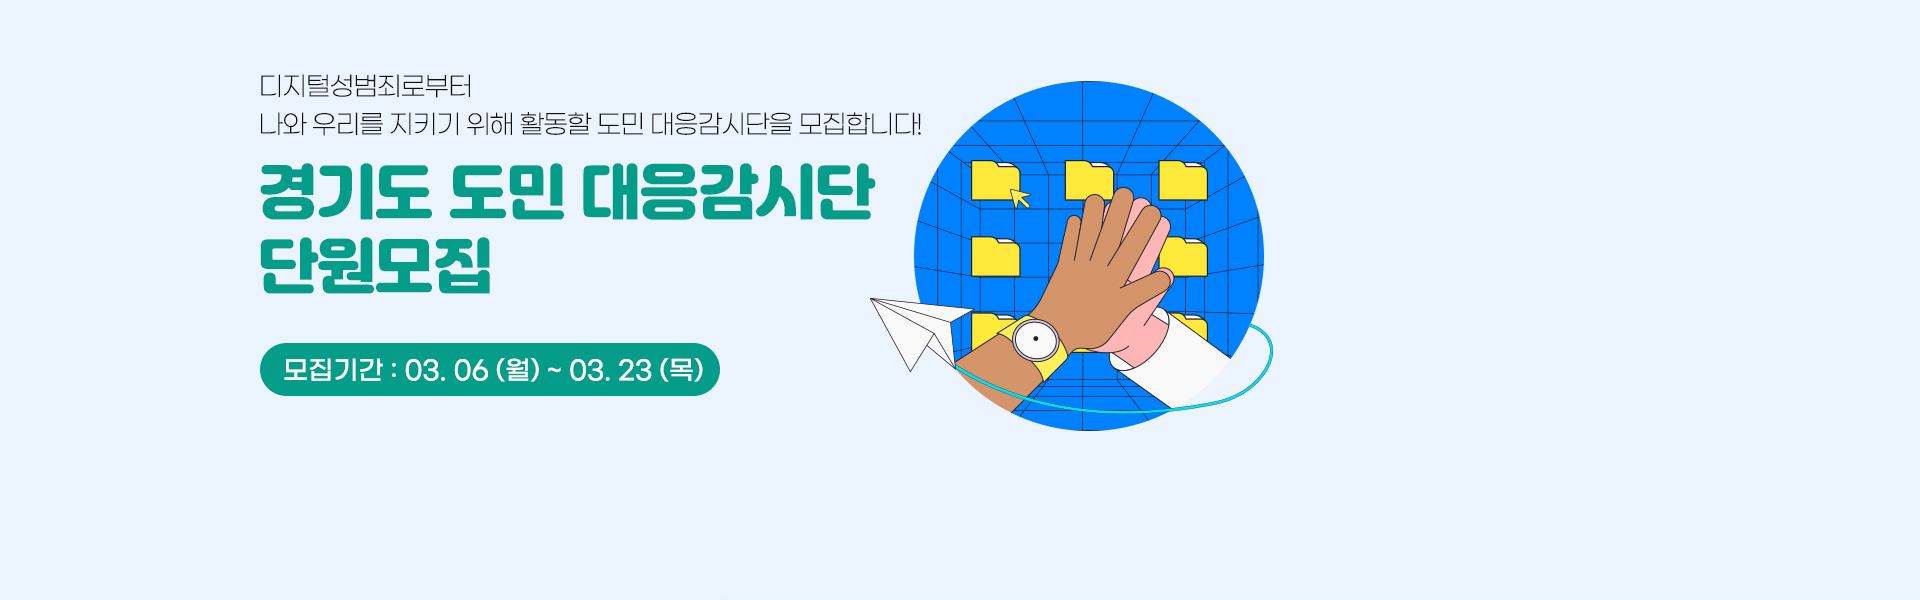 경기도 도민 대응감시단 단원모집